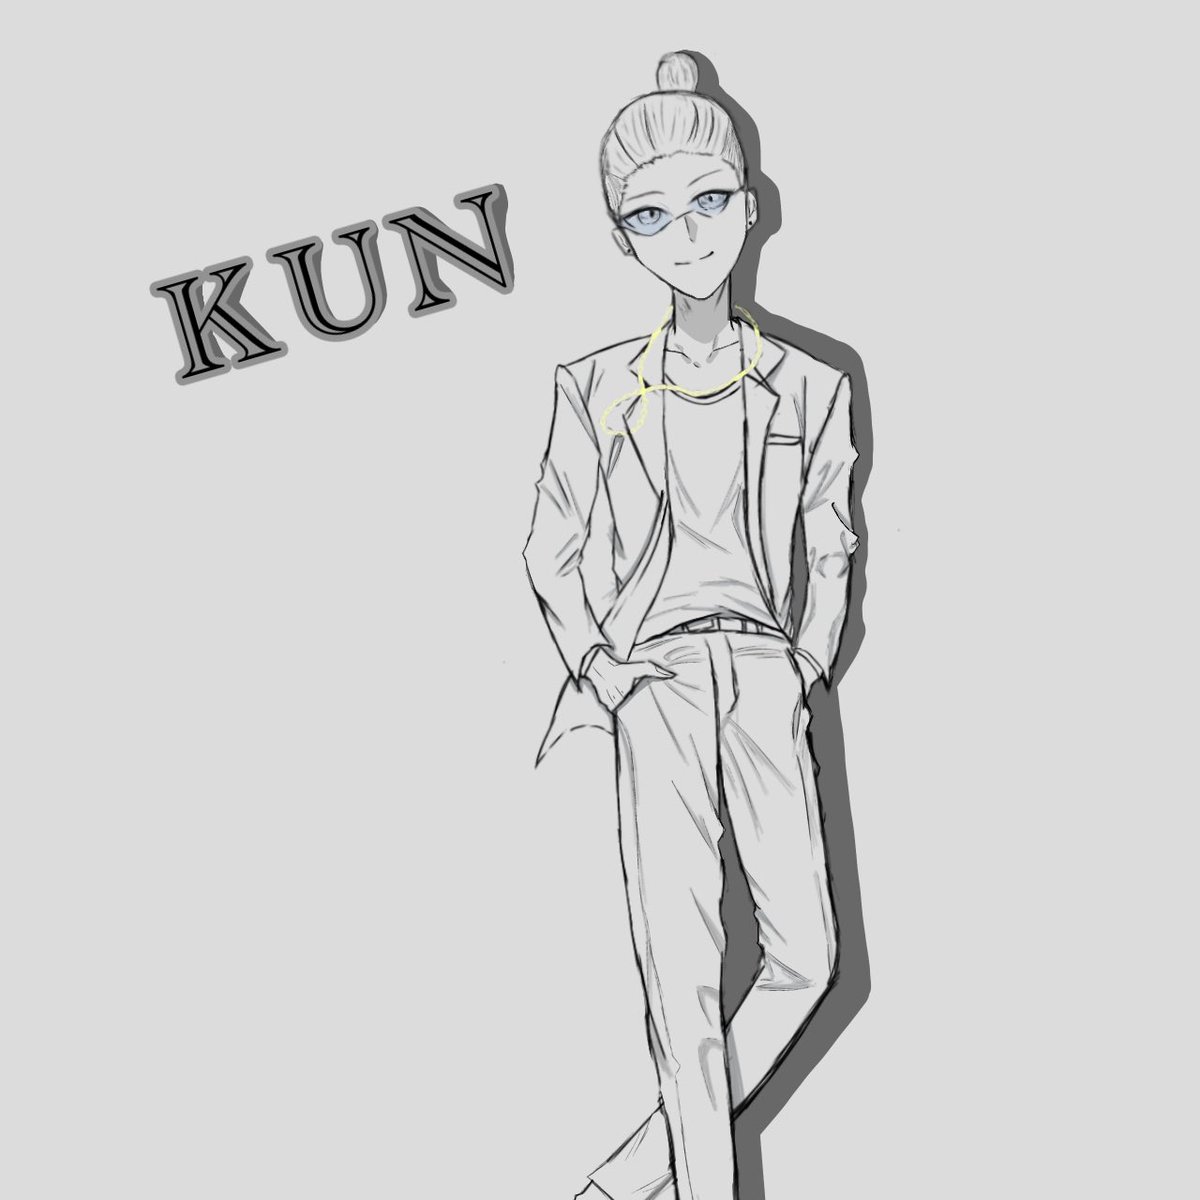 kunさんのPUSビジュ模写？みたいなものしました！どっちが好き？
#ニート部アート